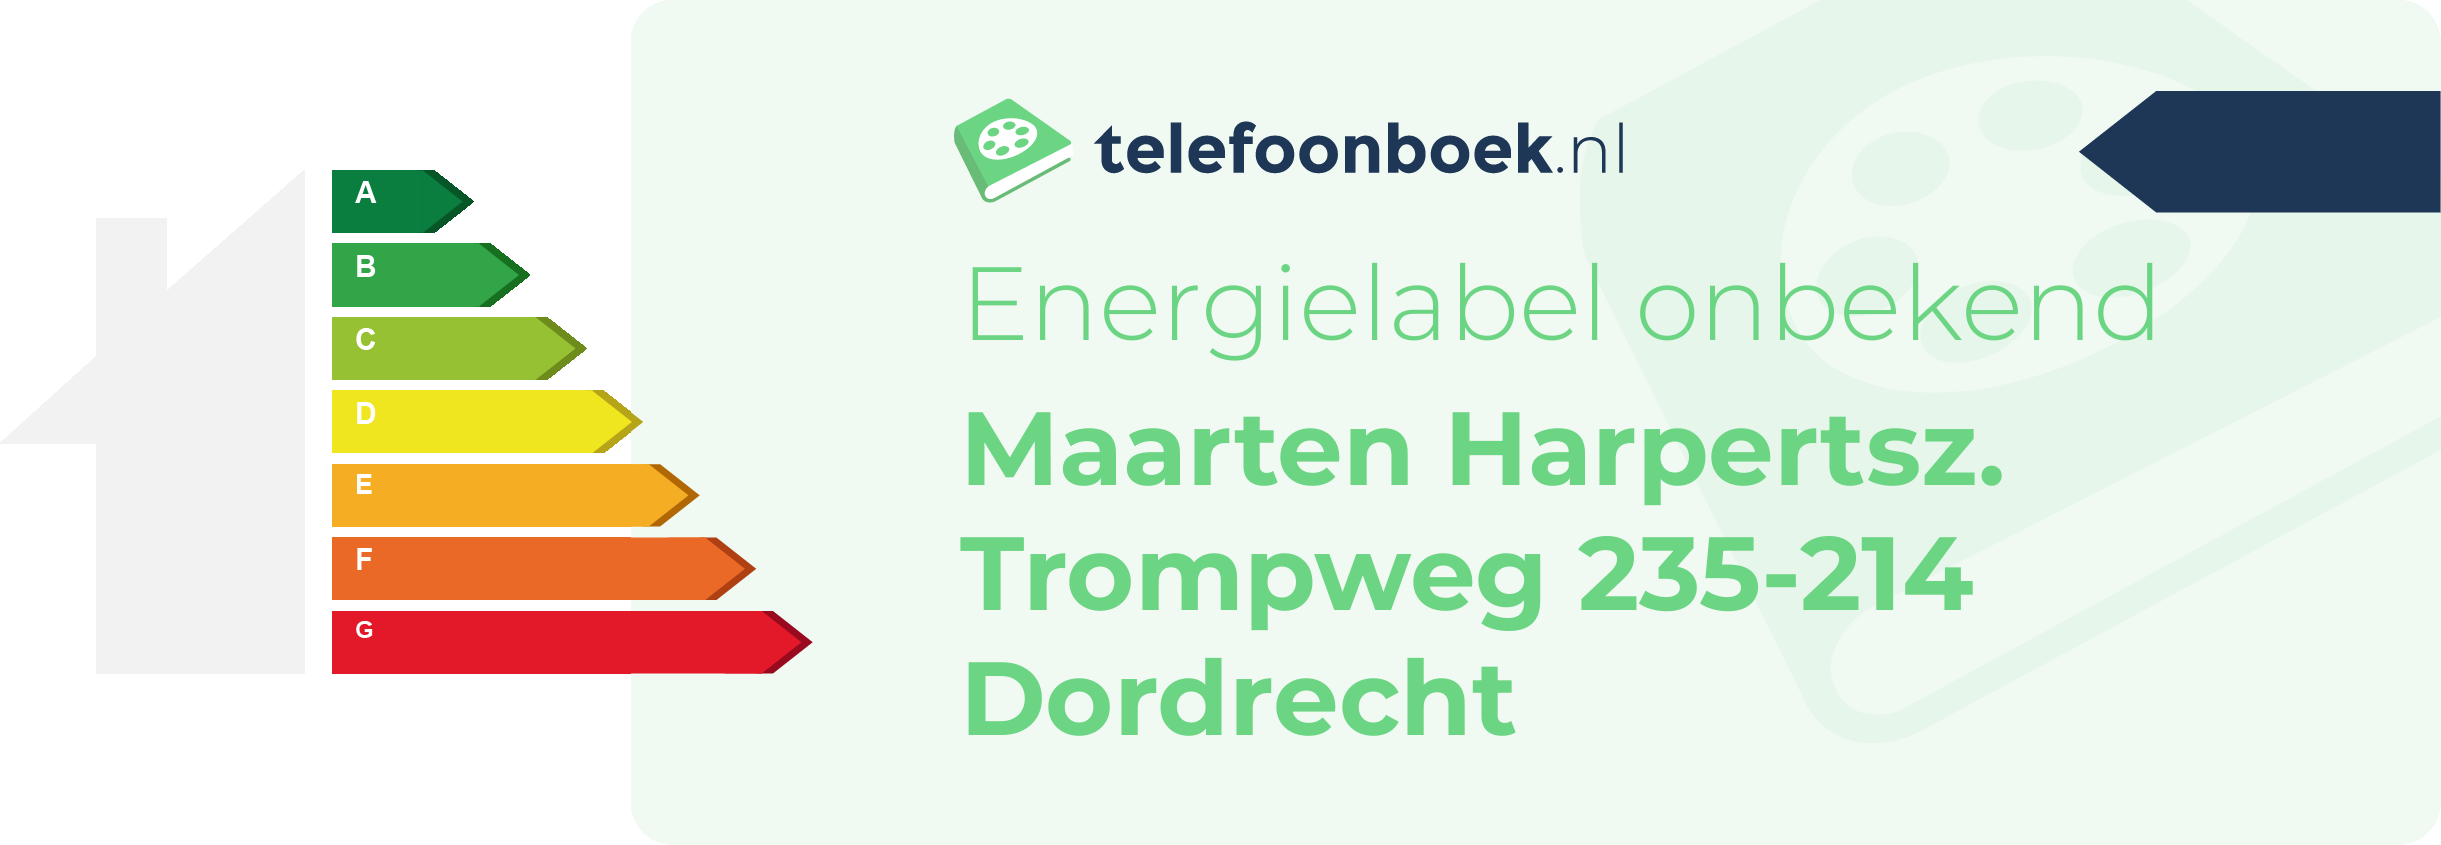 Energielabel Maarten Harpertsz. Trompweg 235-214 Dordrecht